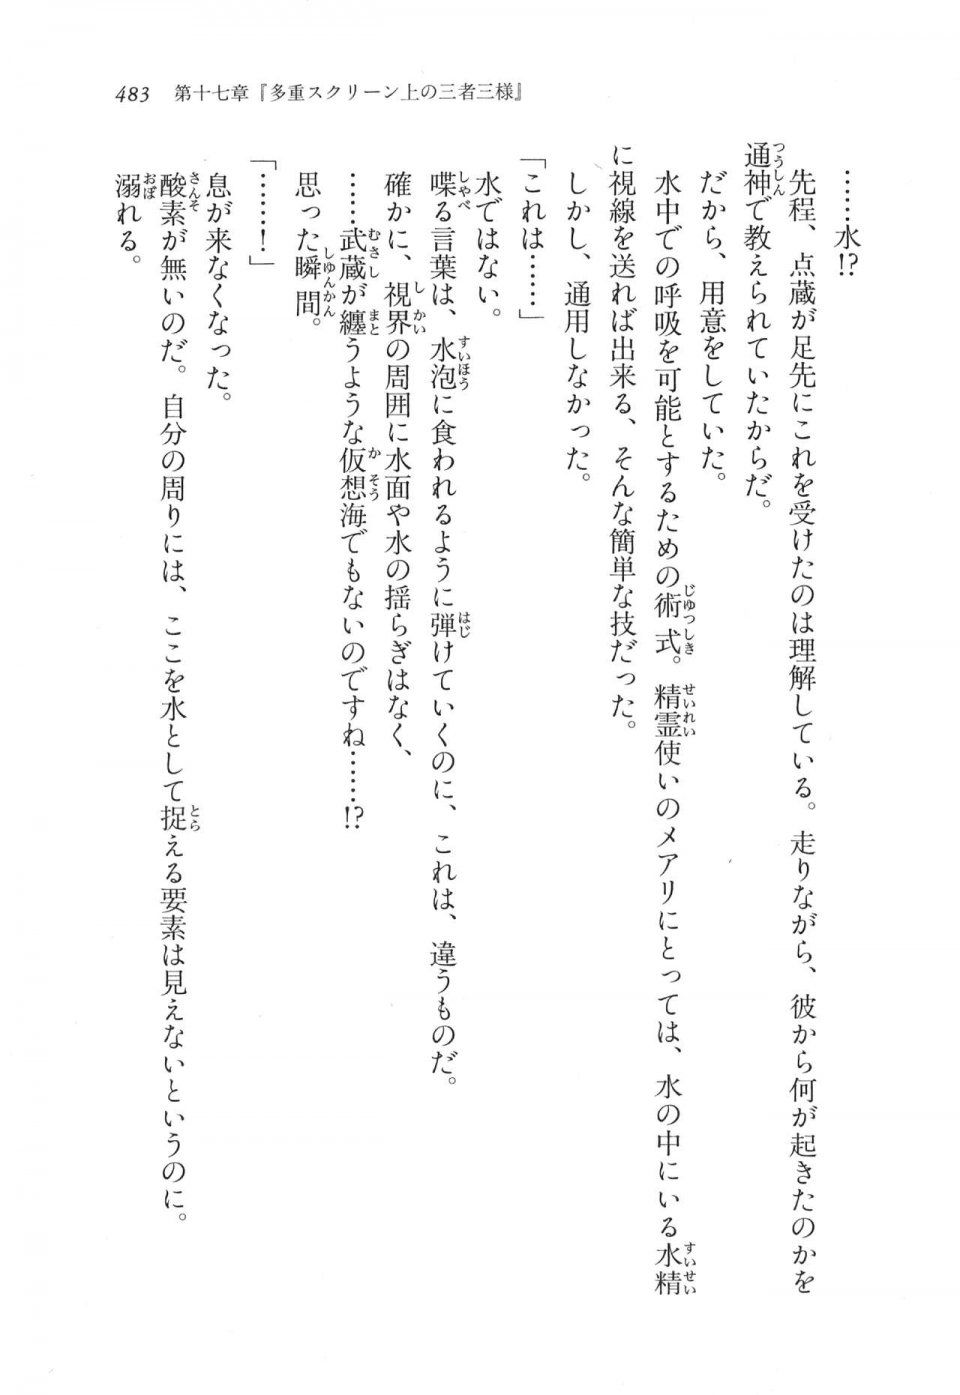 Kyoukai Senjou no Horizon LN Vol 11(5A) - Photo #483